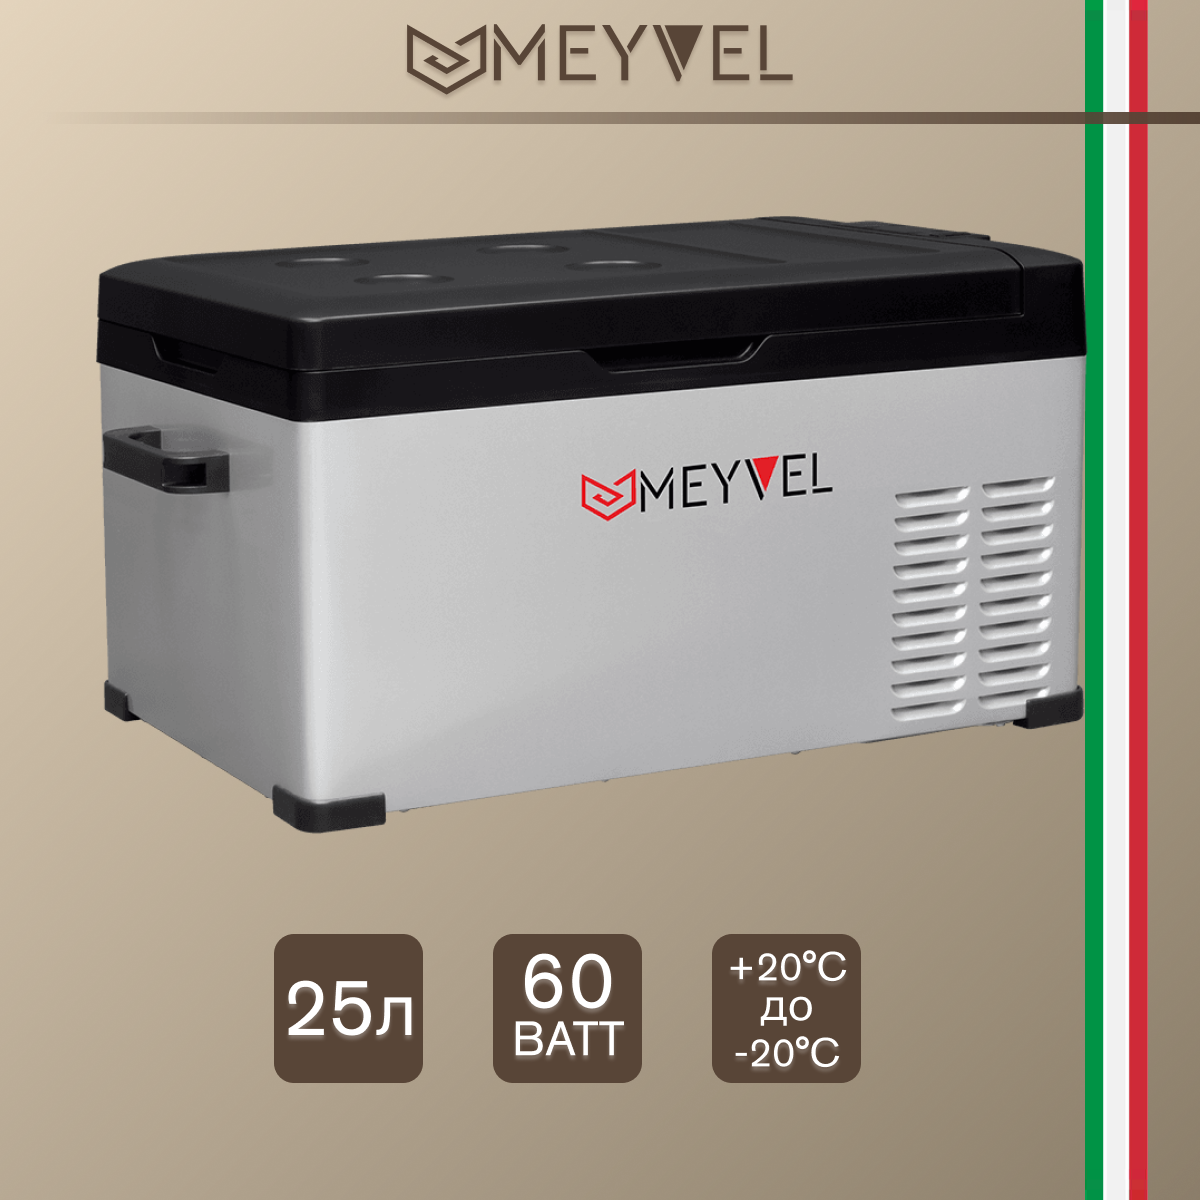 Kомпрессорный автохолодильник холодильник Meyvel AF-B25 (компрессорный холодильник на 25 литров для автомобиля)